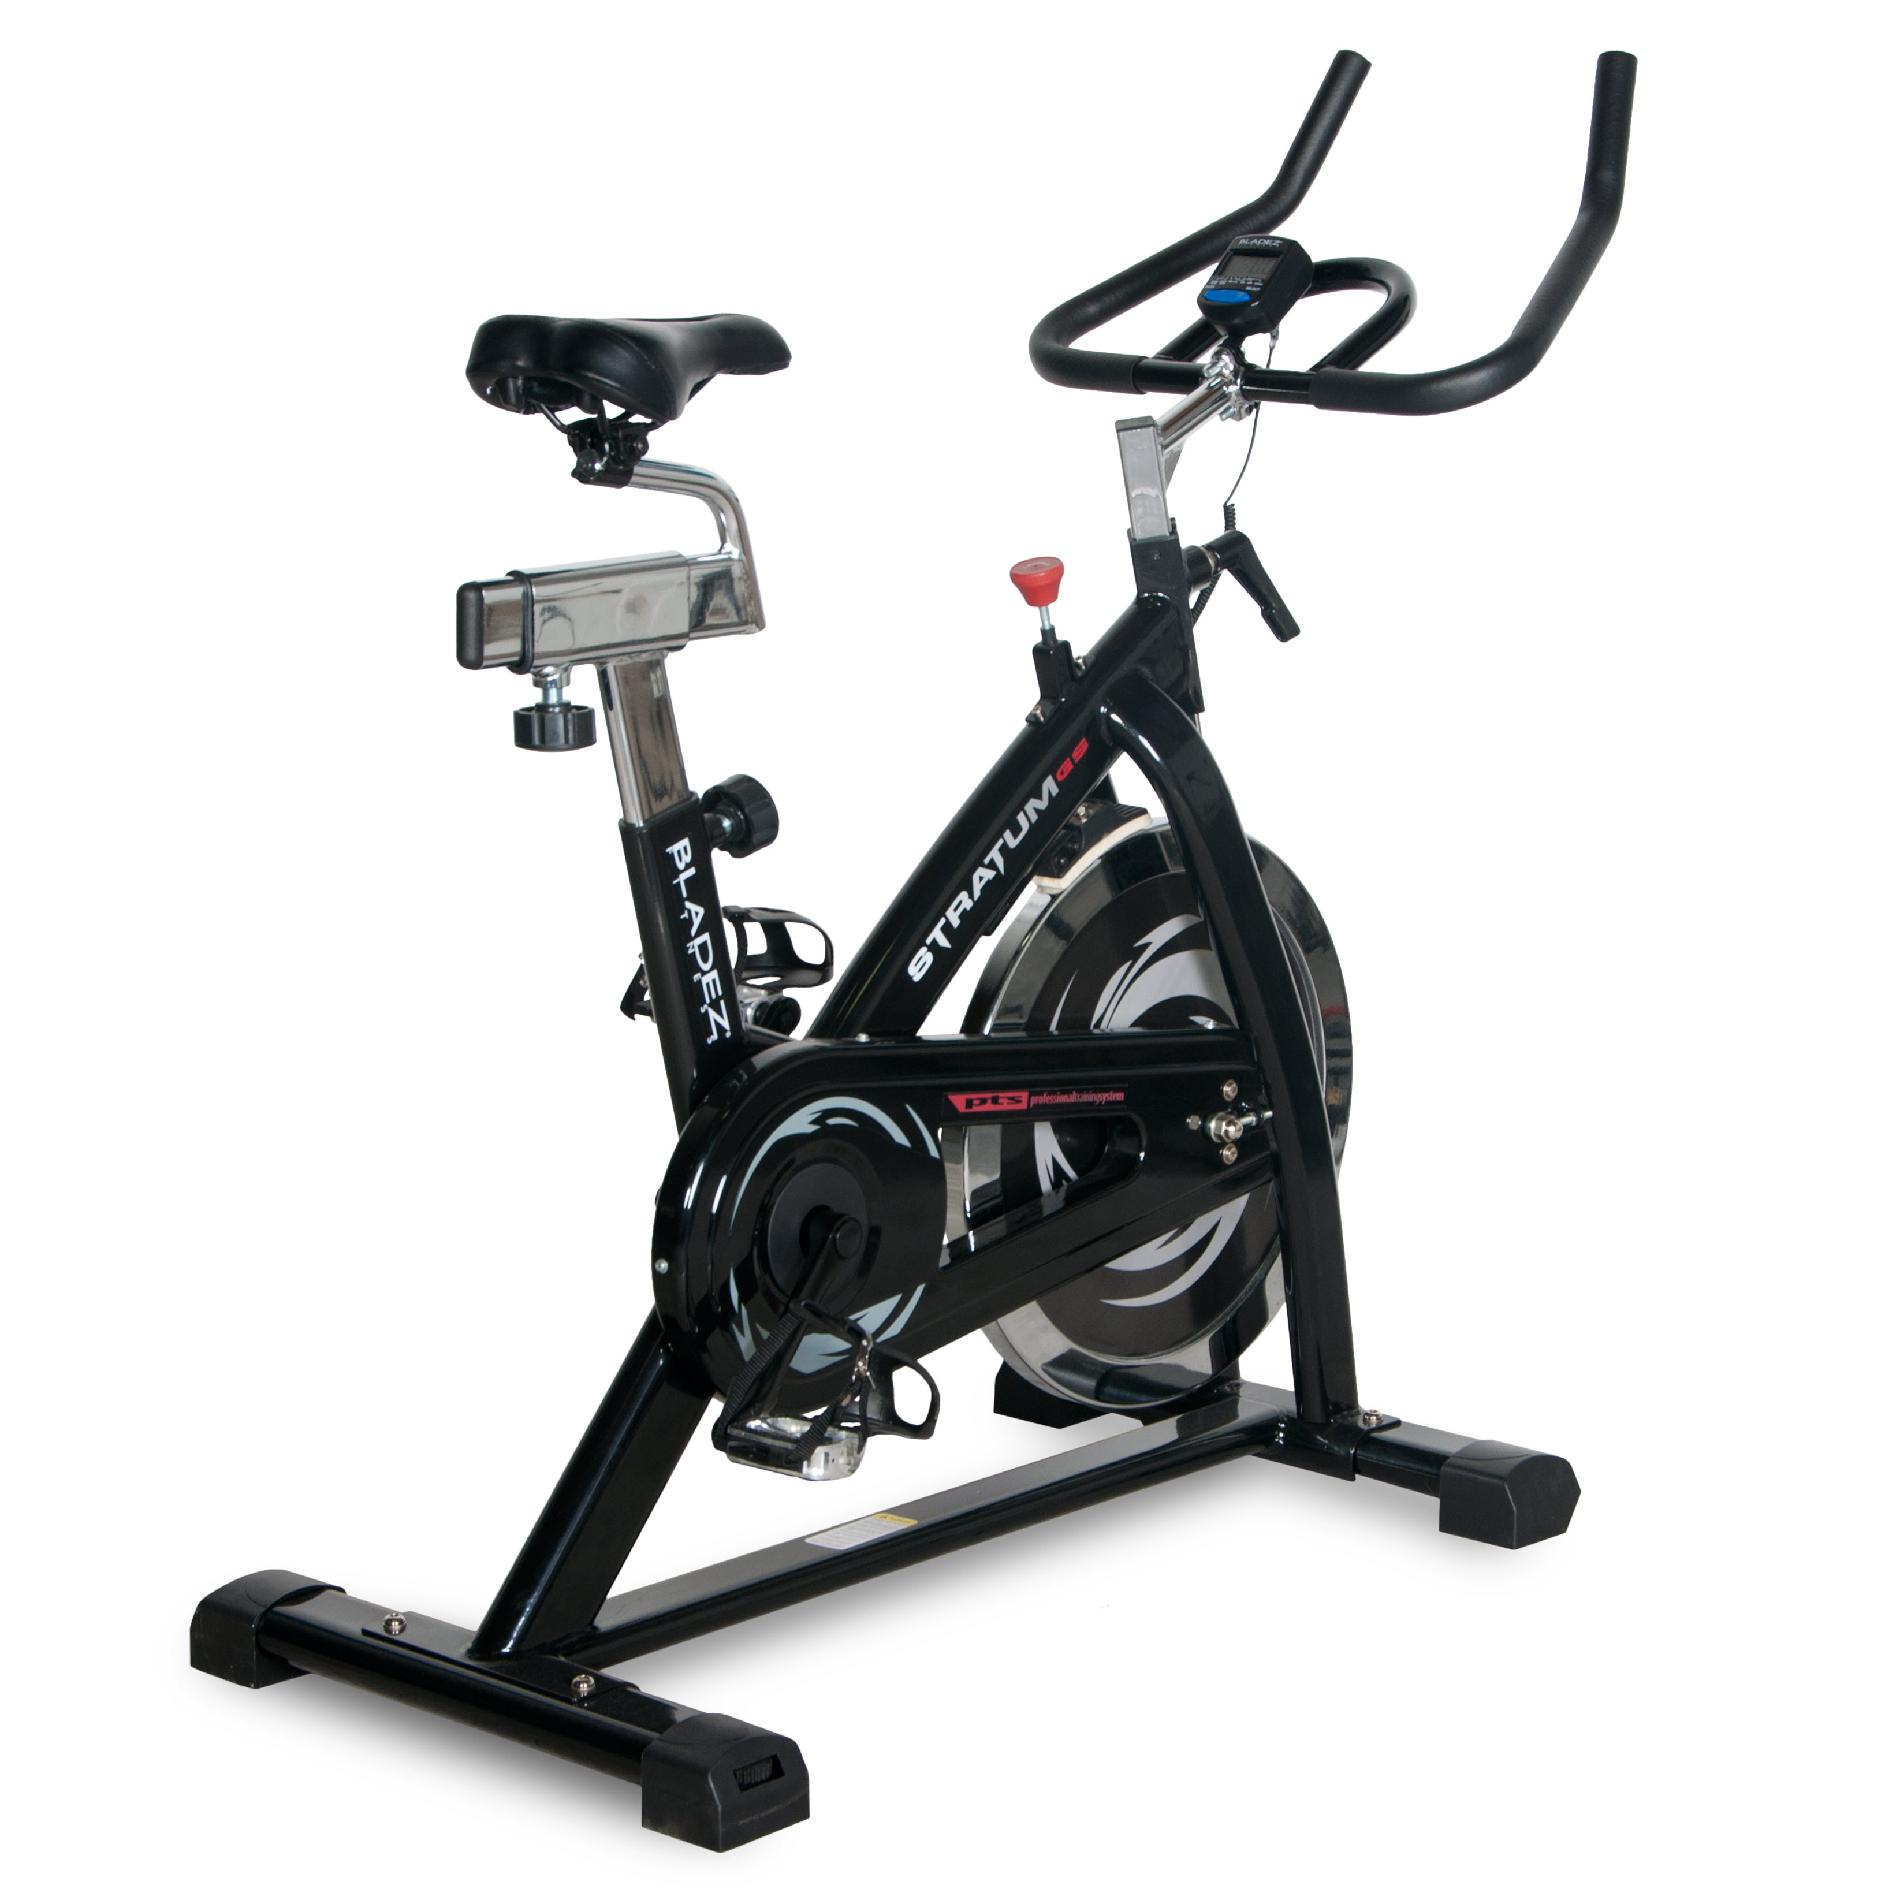 bladez fitness stratum gs ii indoor exercise bike